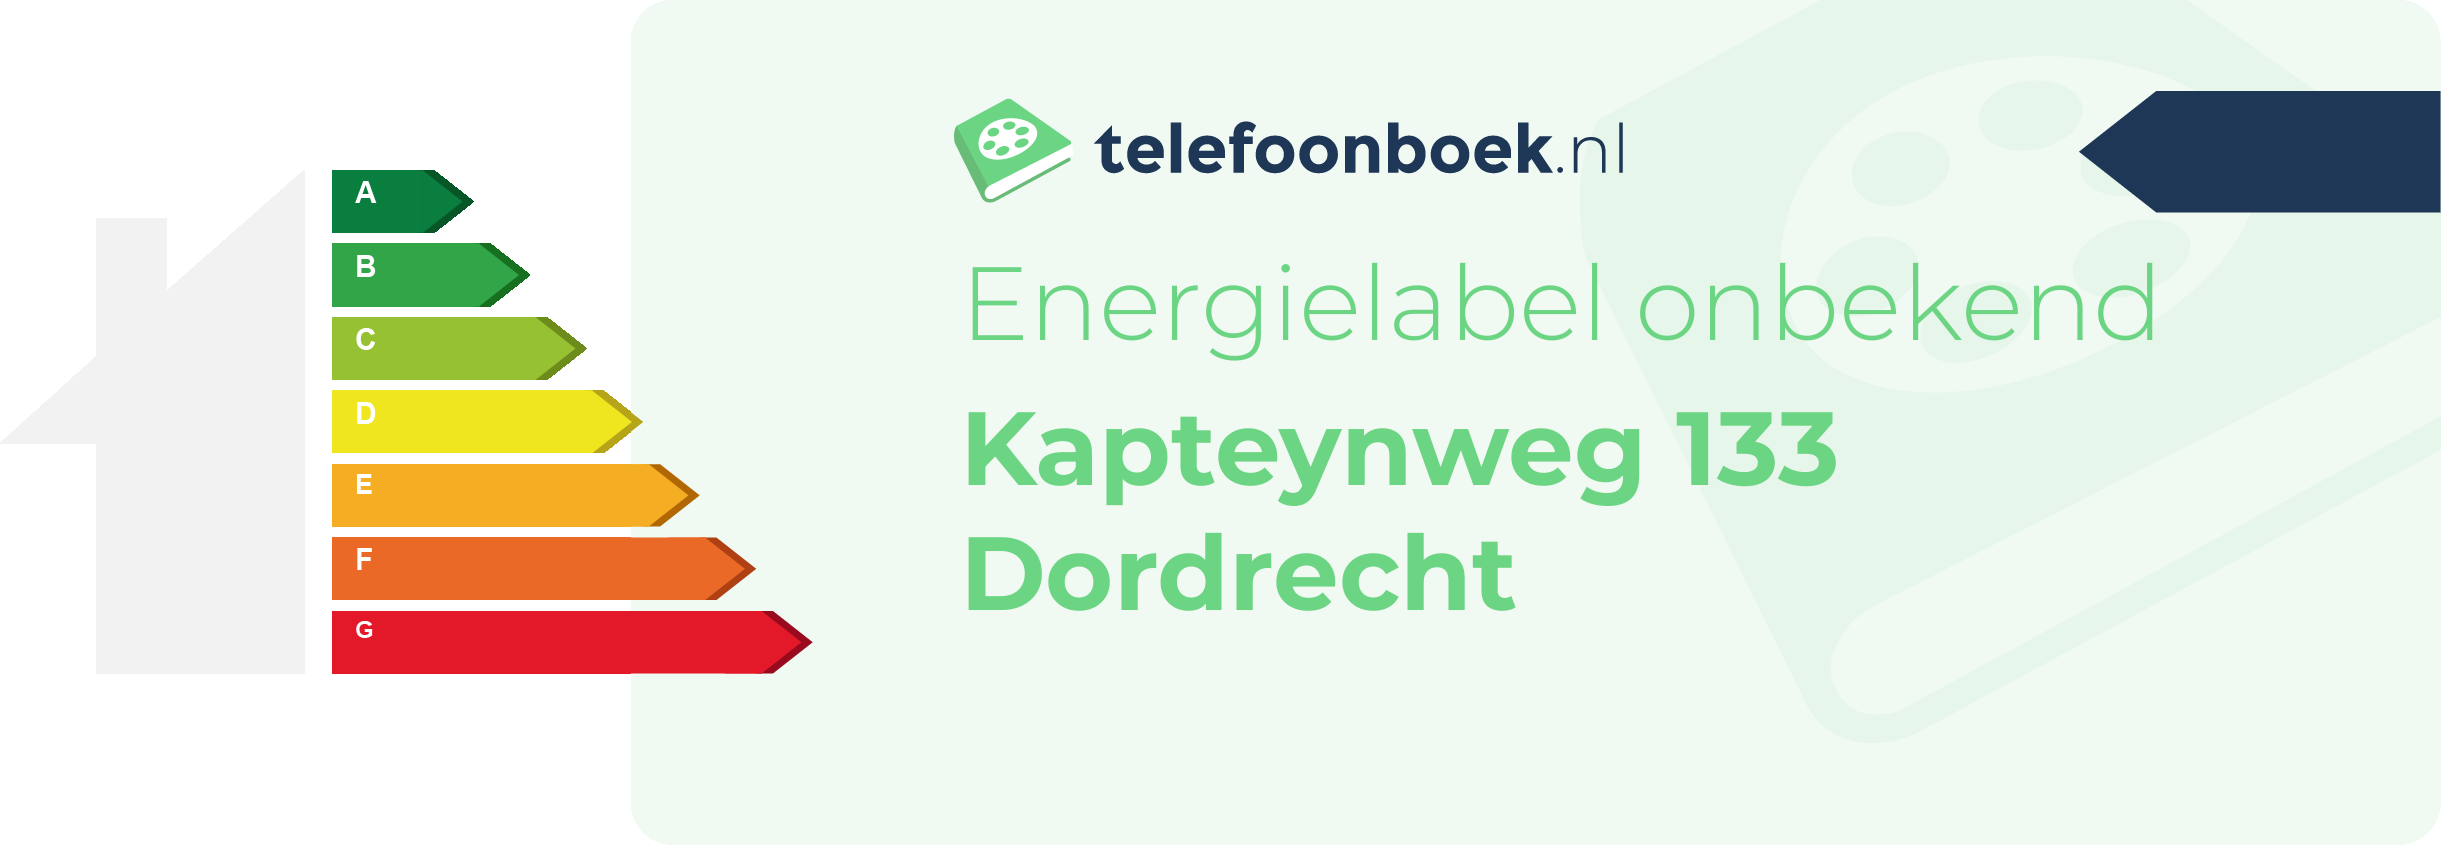 Energielabel Kapteynweg 133 Dordrecht